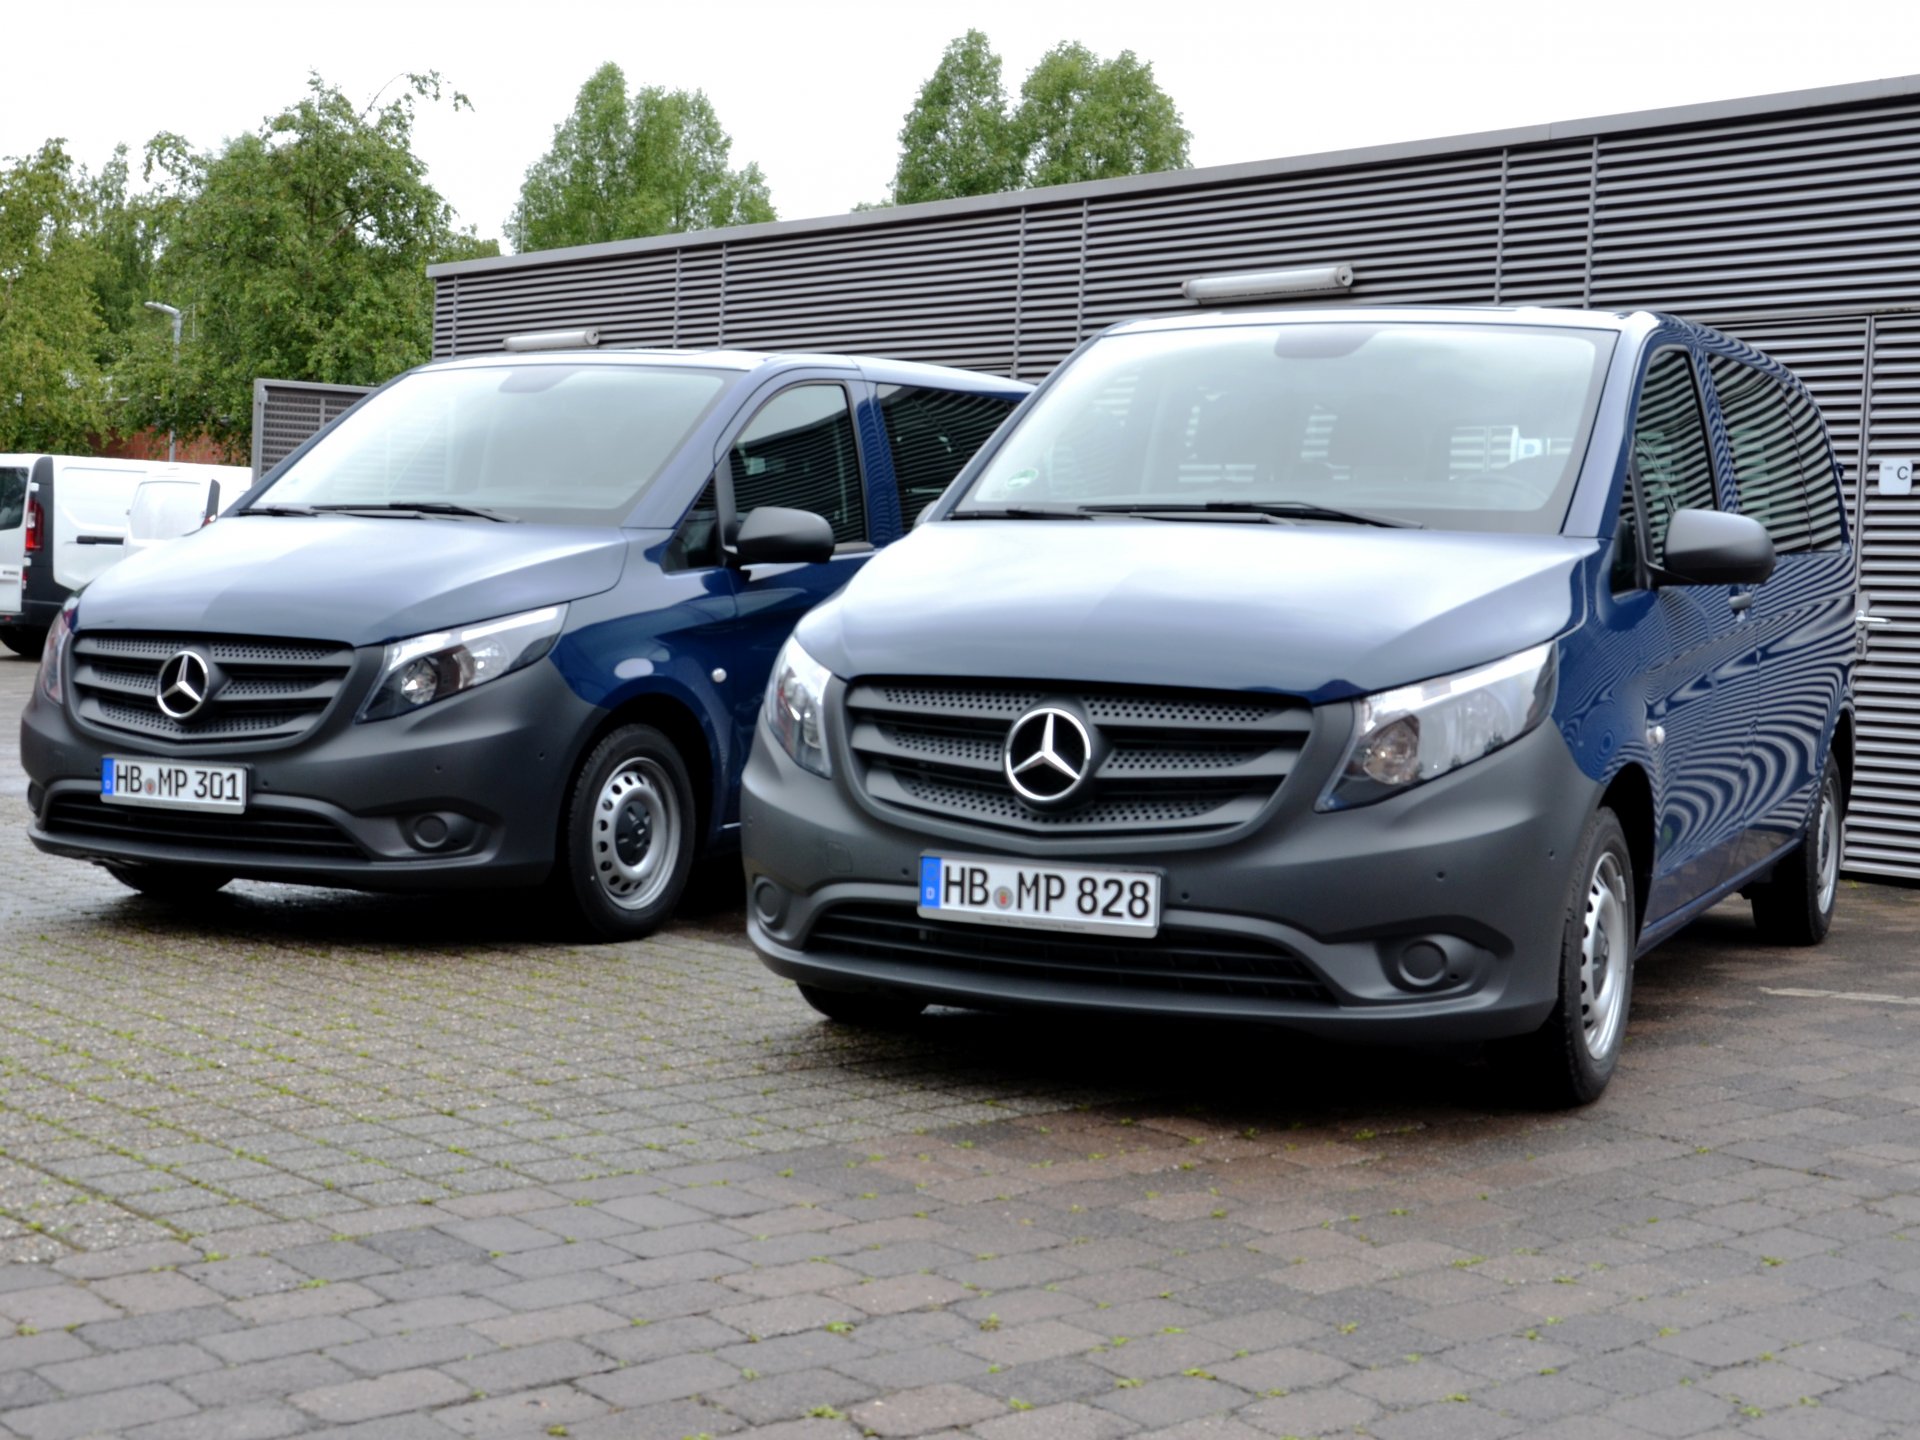 Mercedes Vito - unsere neuen Fahrzeuge für Expeditionen und Transporte